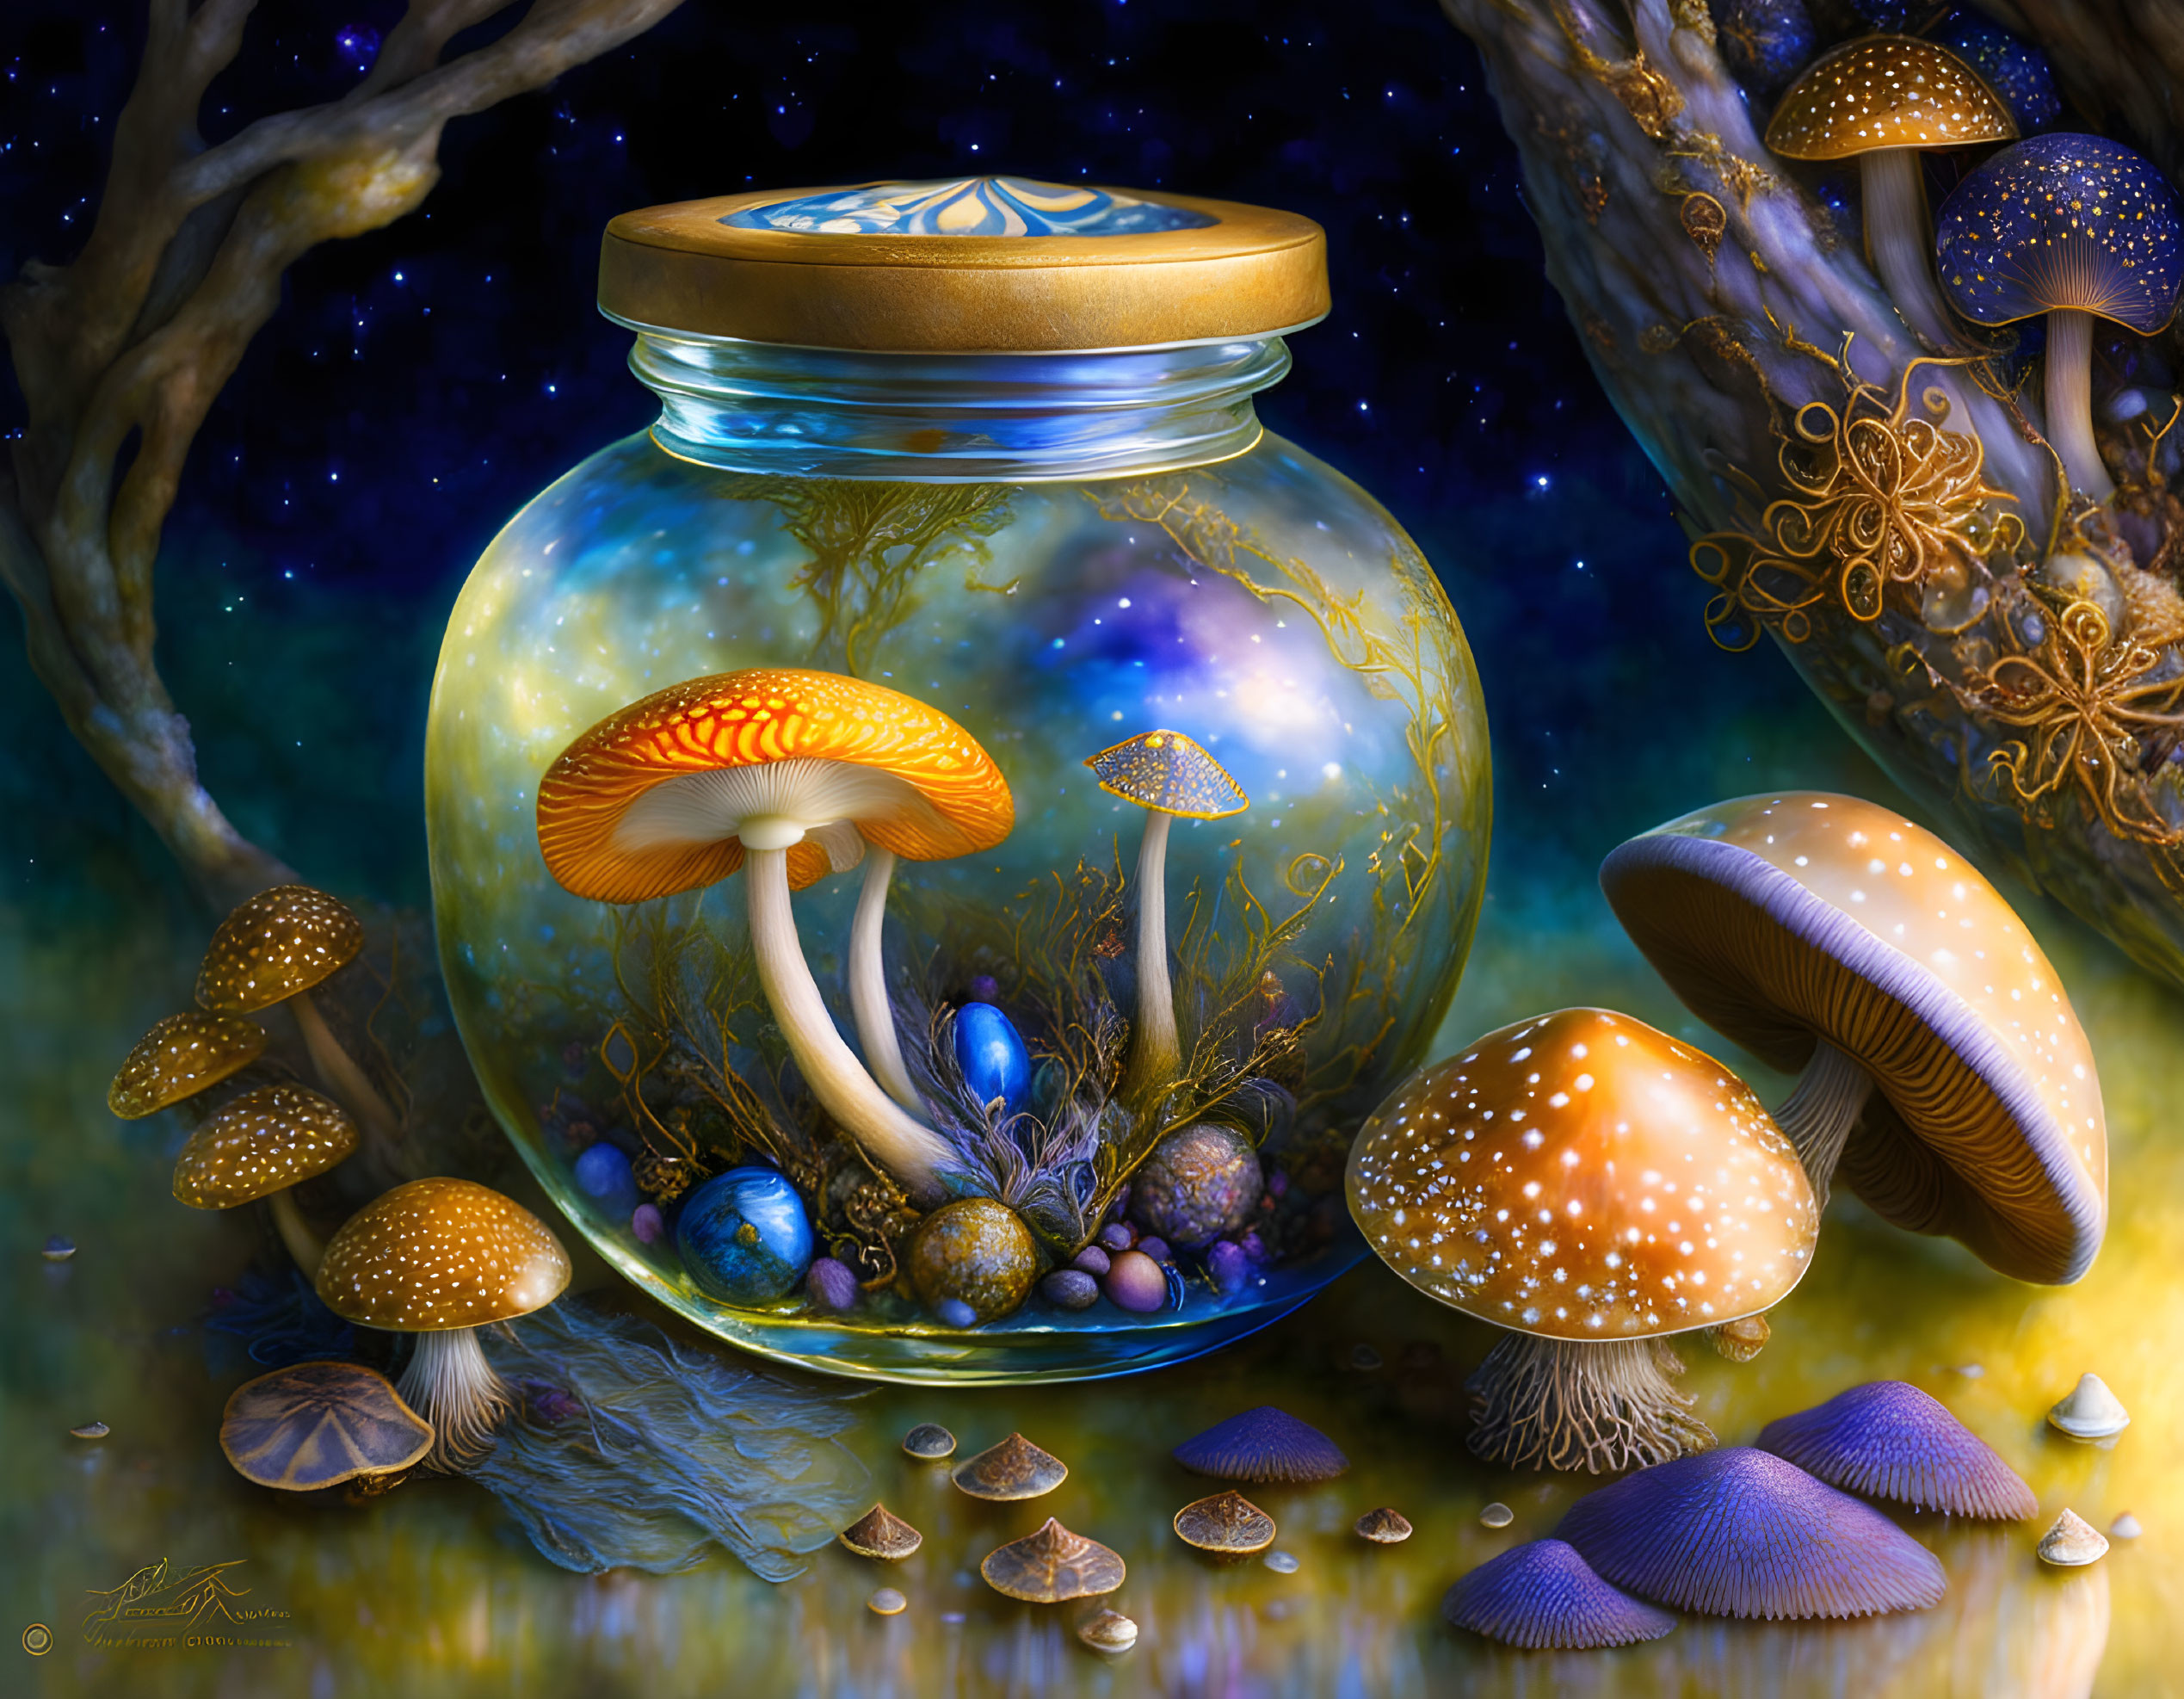   A Jar full of magic mushrooms